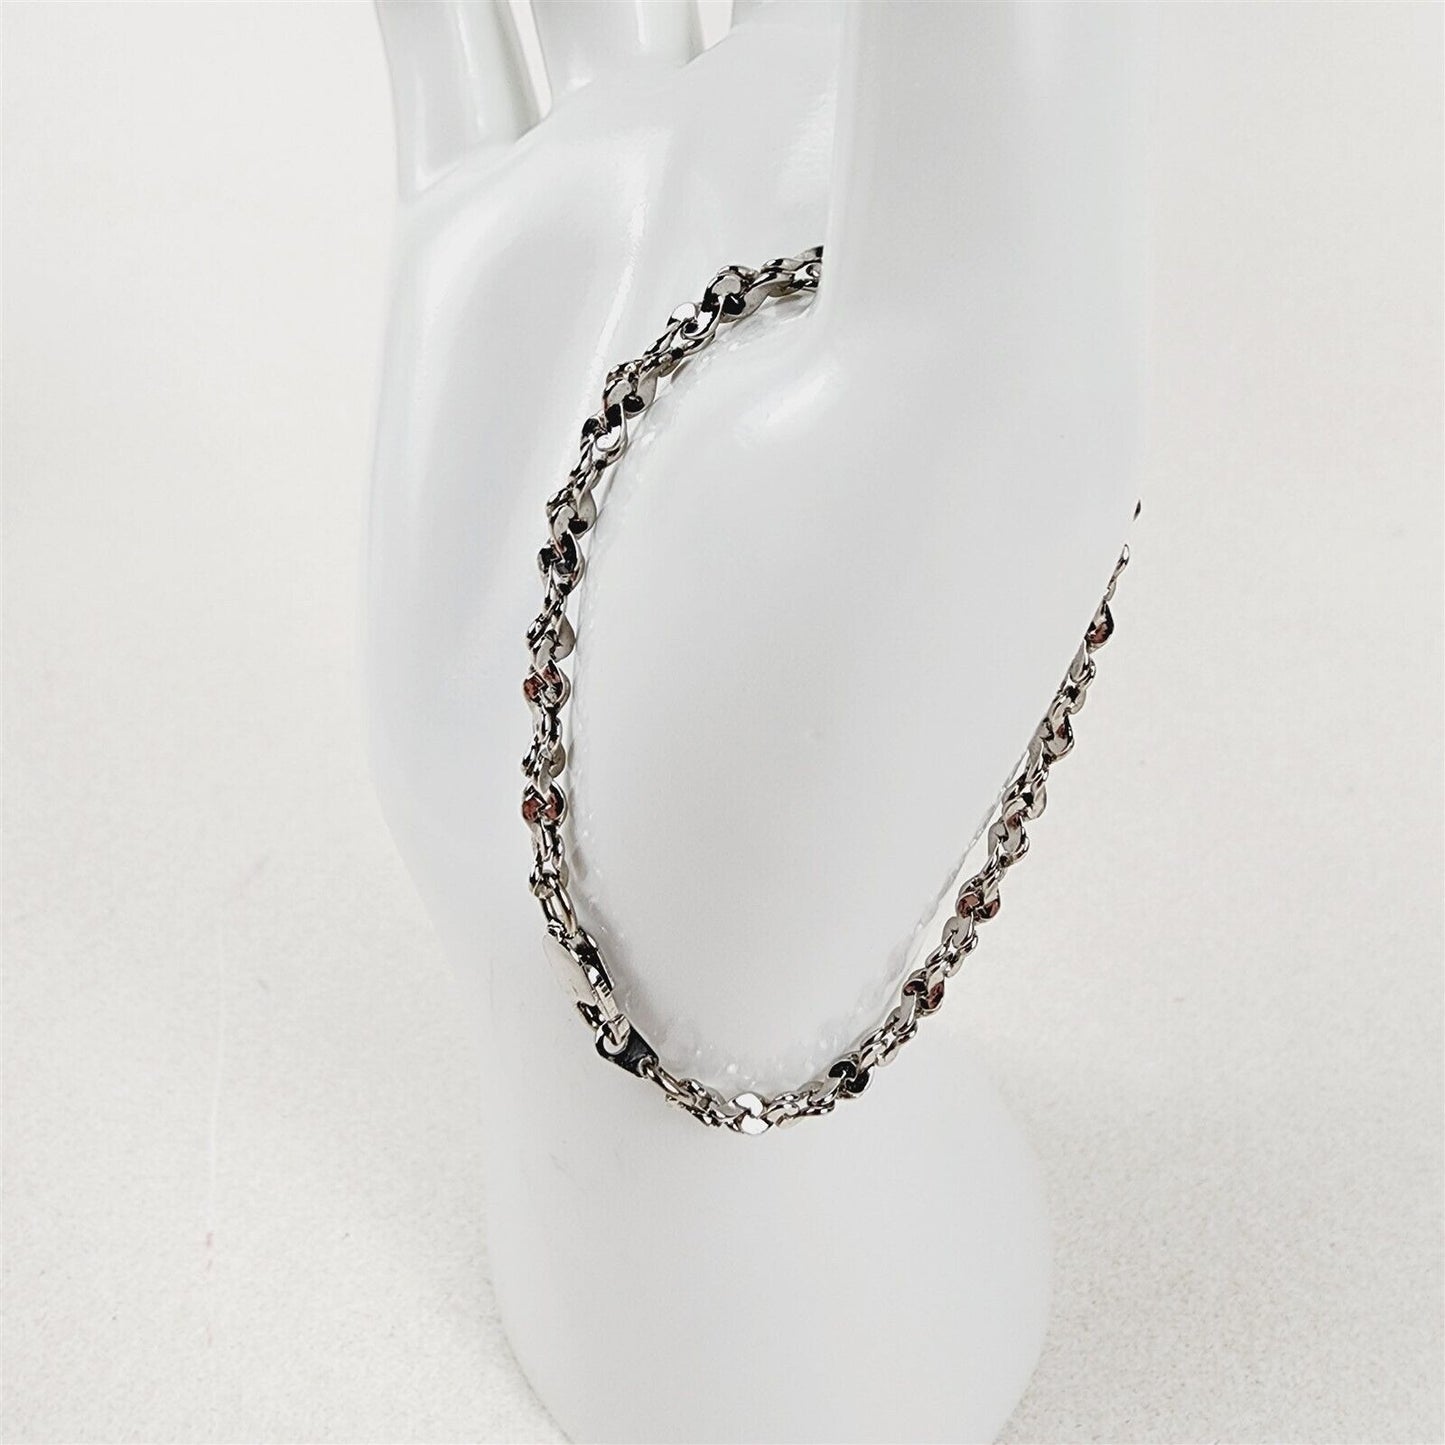 Rhodium Plated Bracelet Serpentine Twist 3.75mm Chain - 6 1/2"